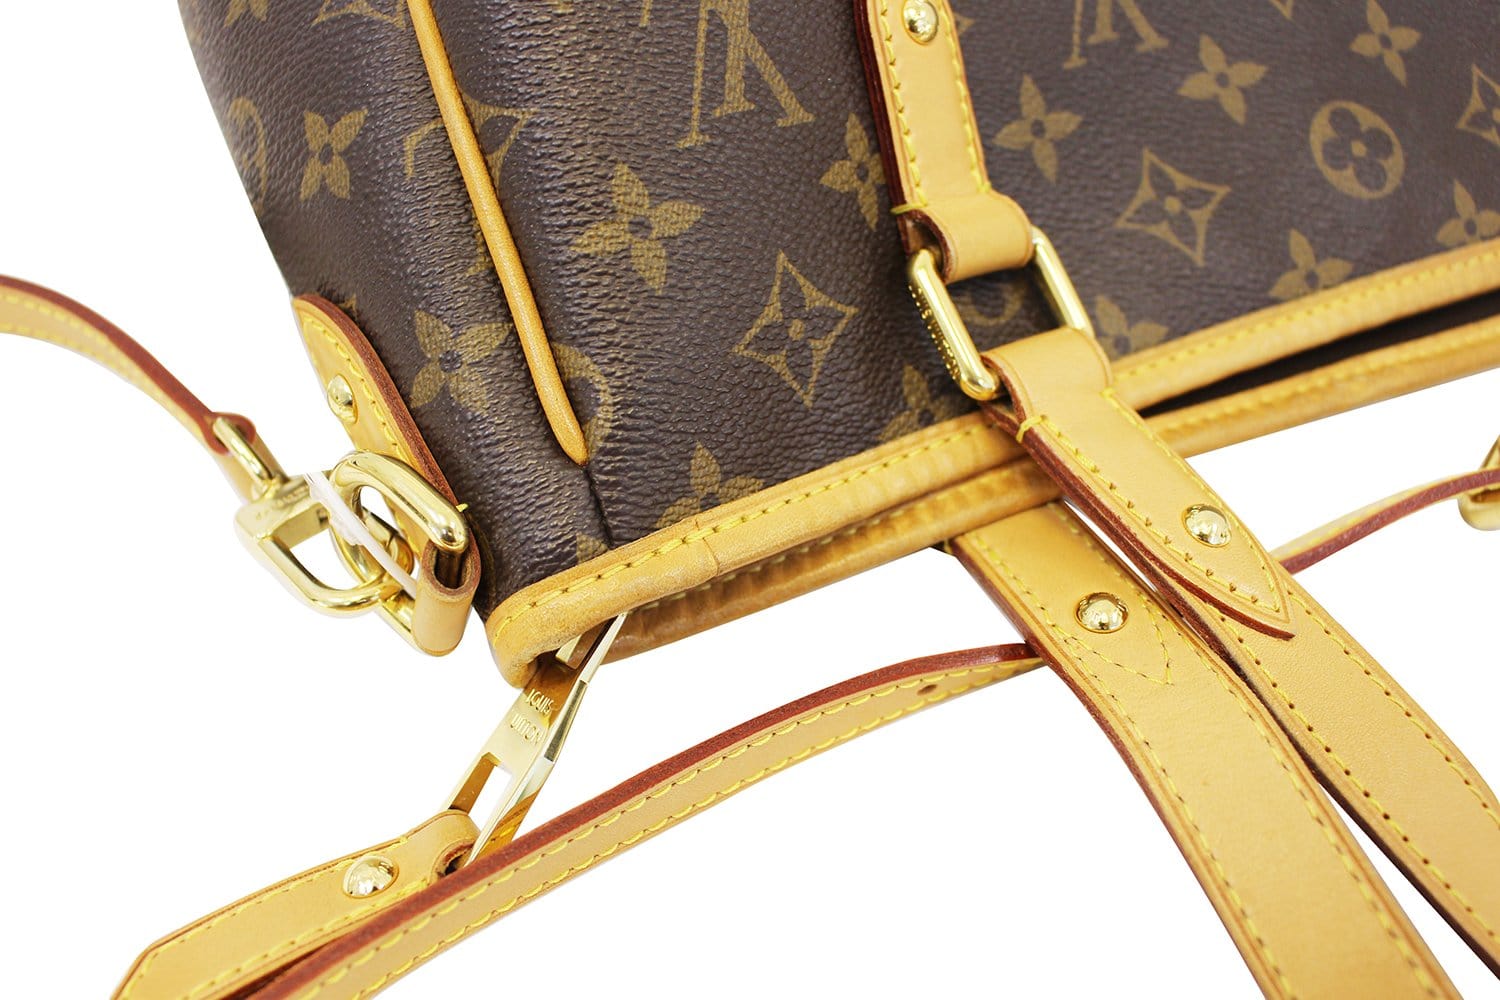 Louis Vuitton Sunbird Handbag Limited Edition Monogram Lurex Canvas Gold  2218392